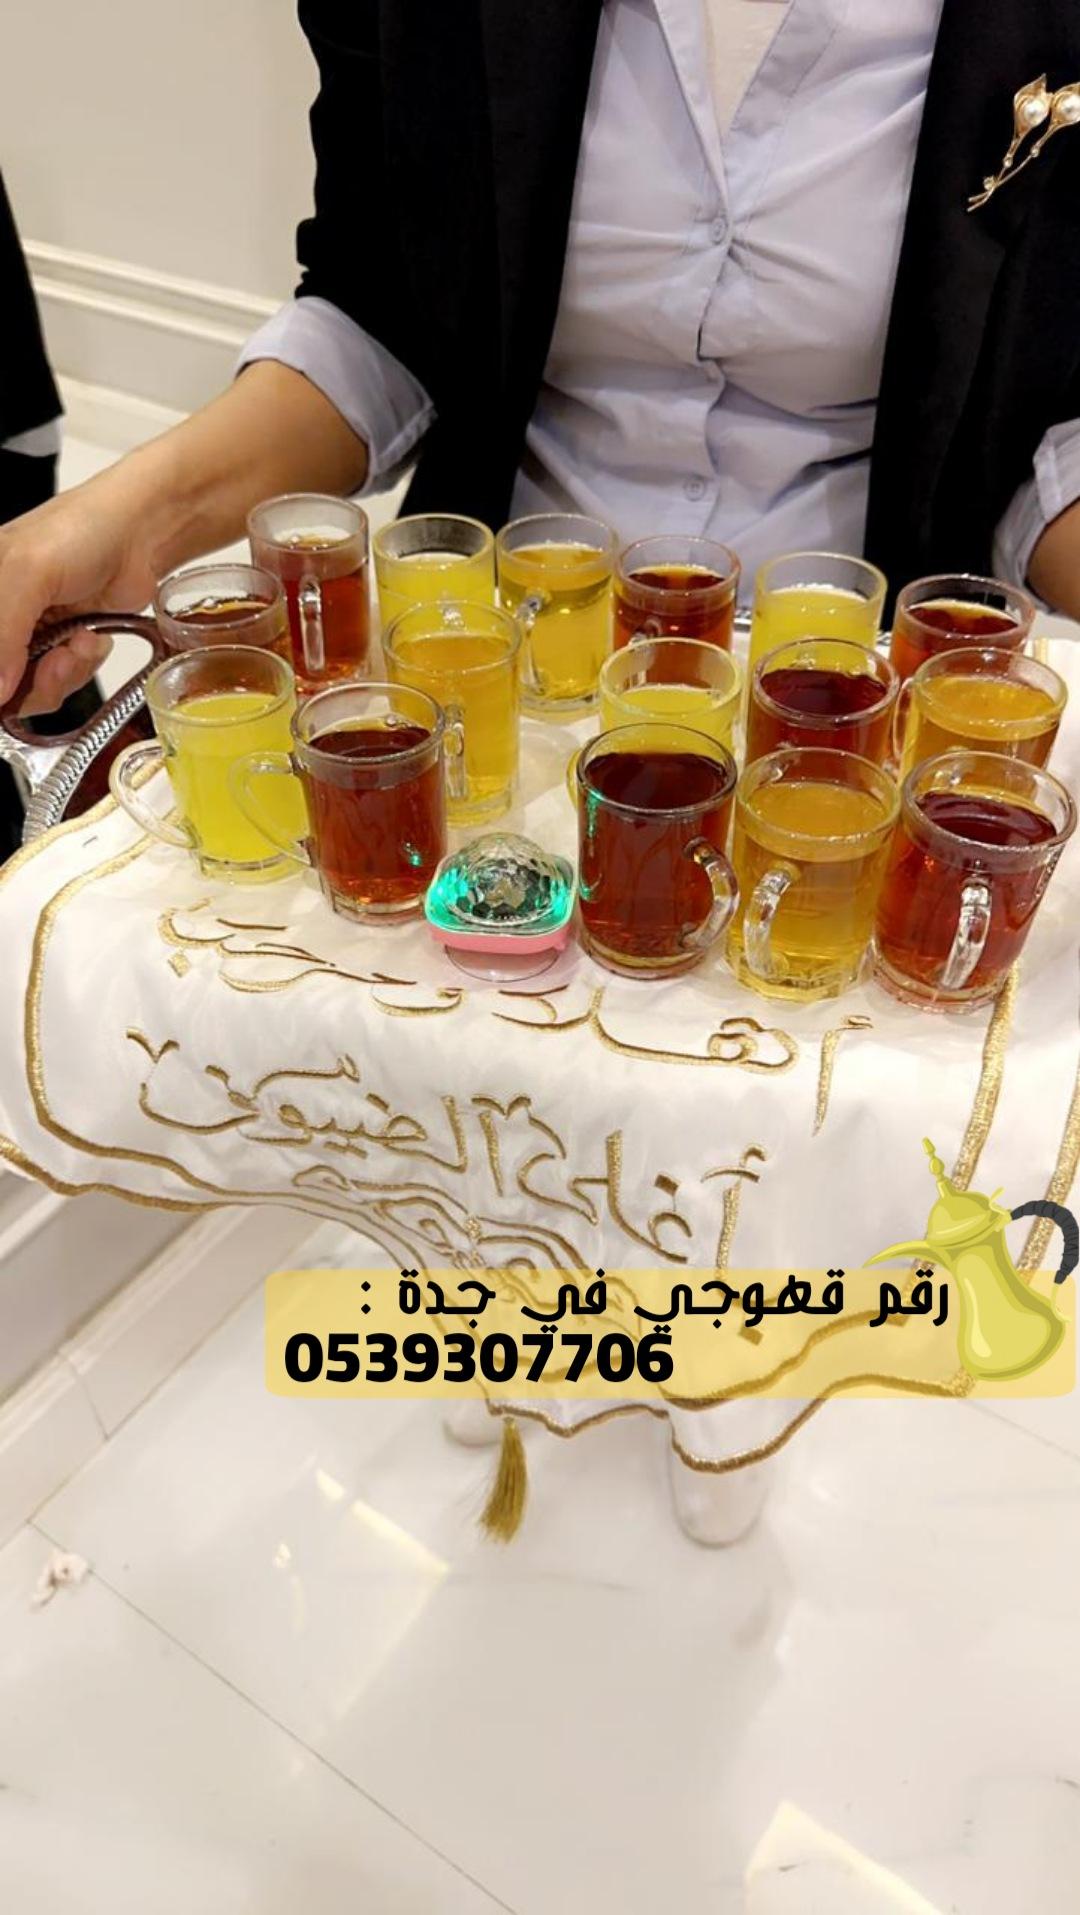 صبابين قهوه في جدة و مباشرين قهوة,0539307706 832119434